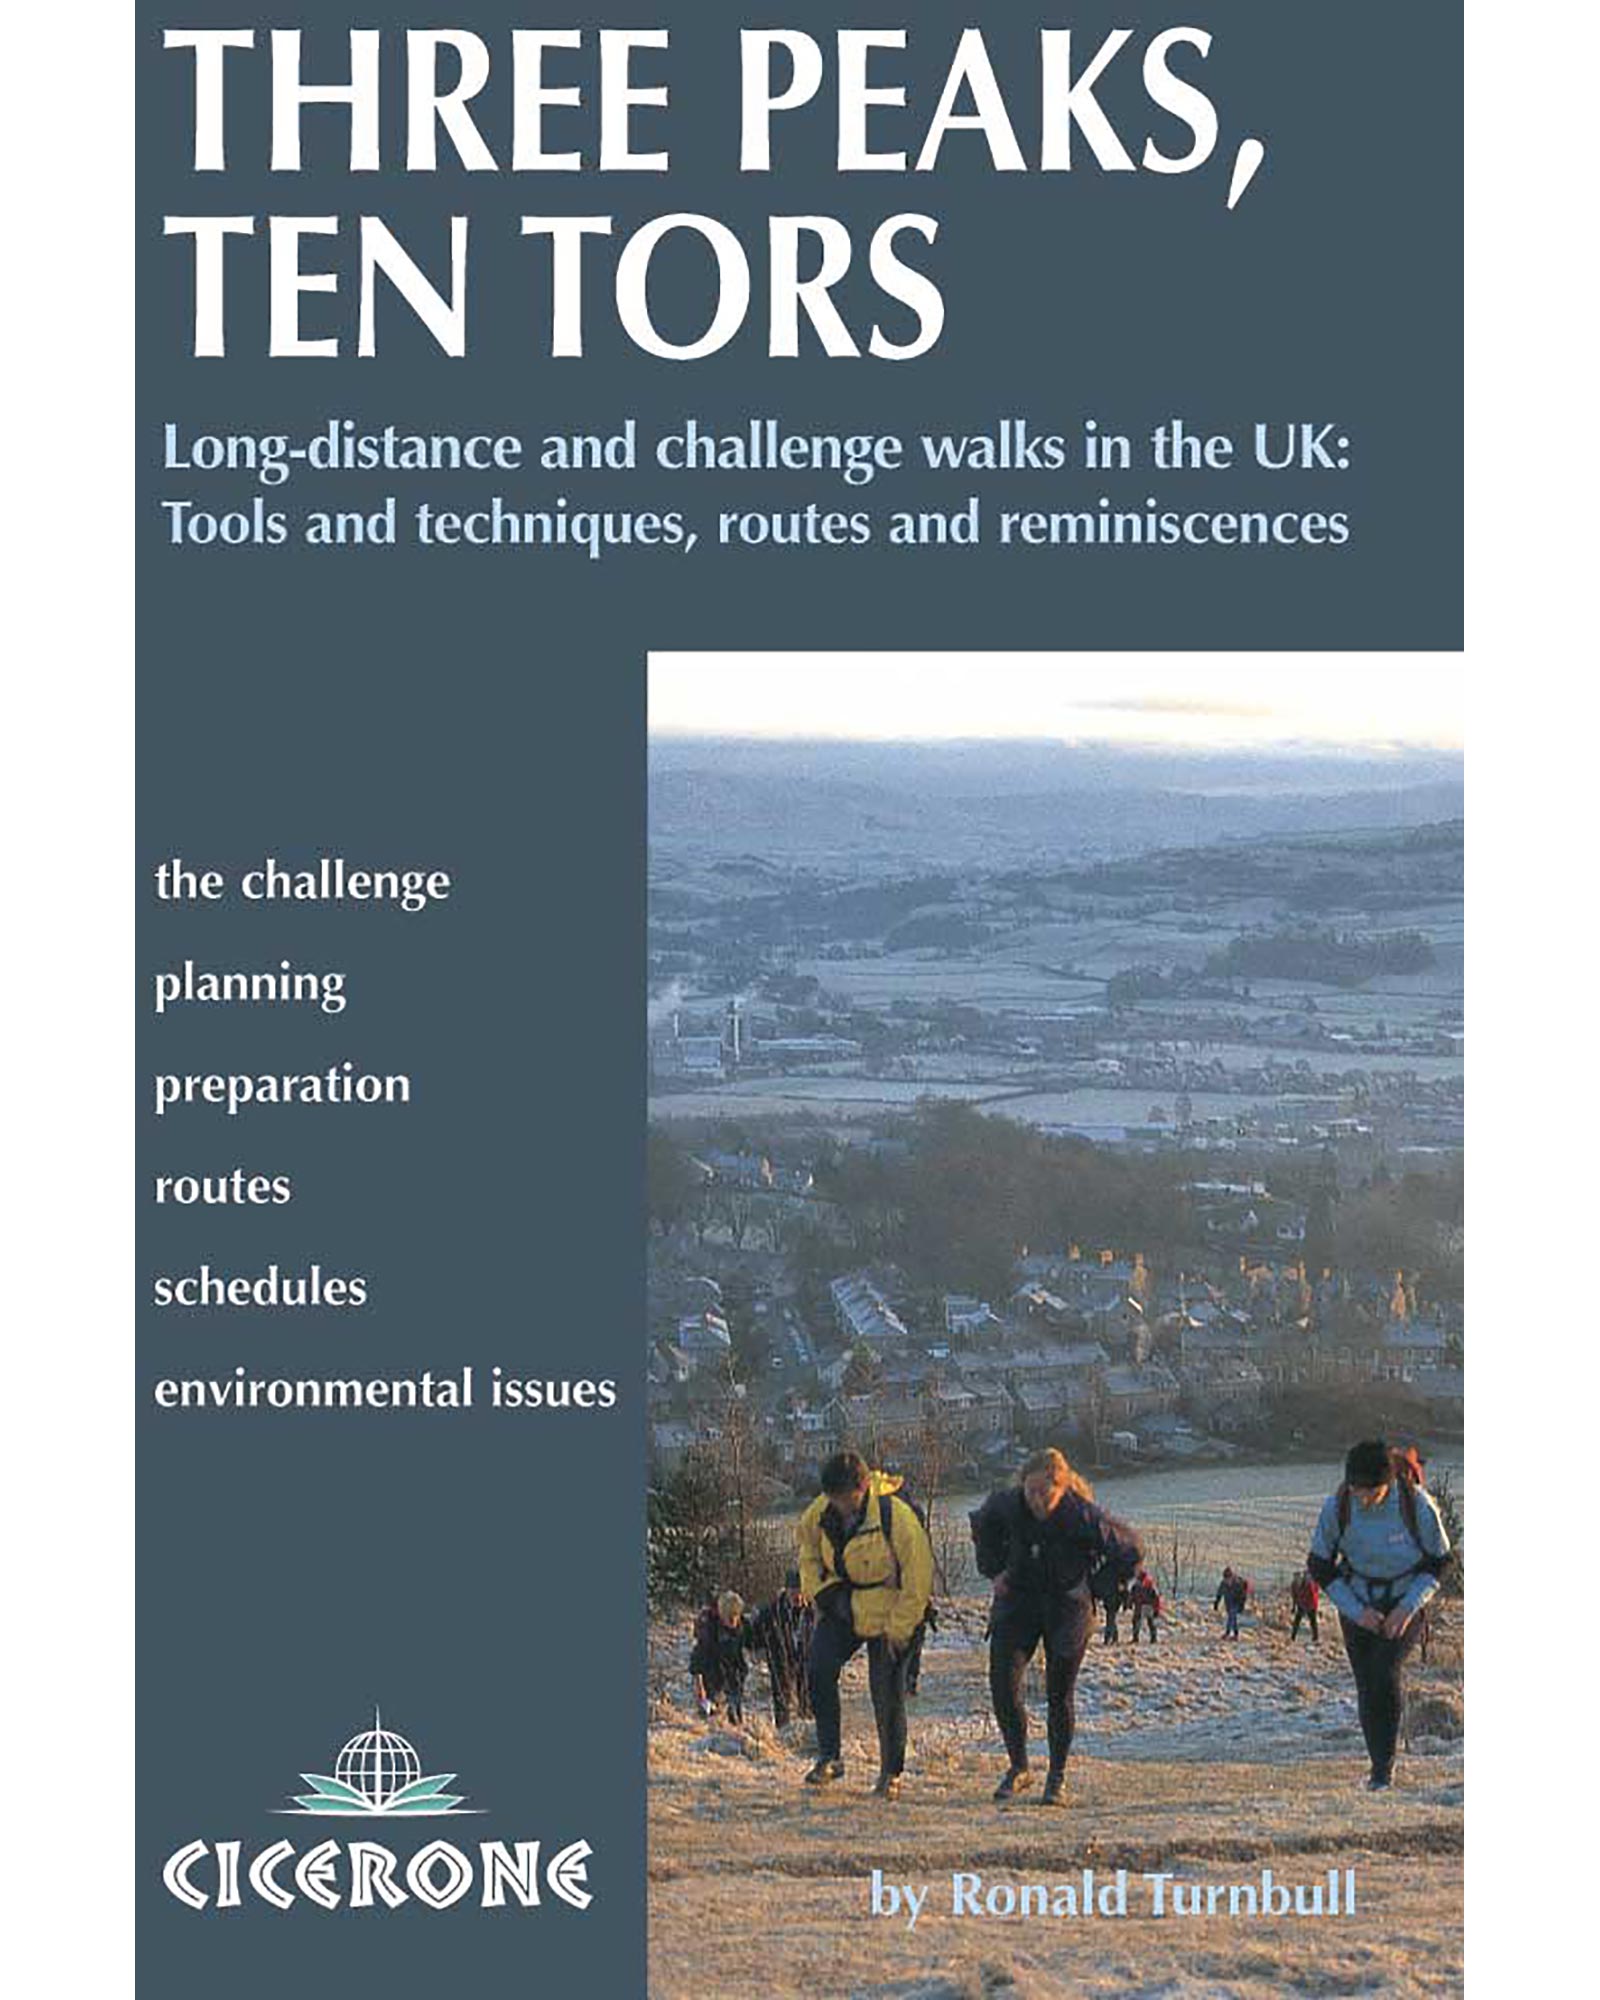 Cicerone Three Peaks  Ten Tors Guide Book